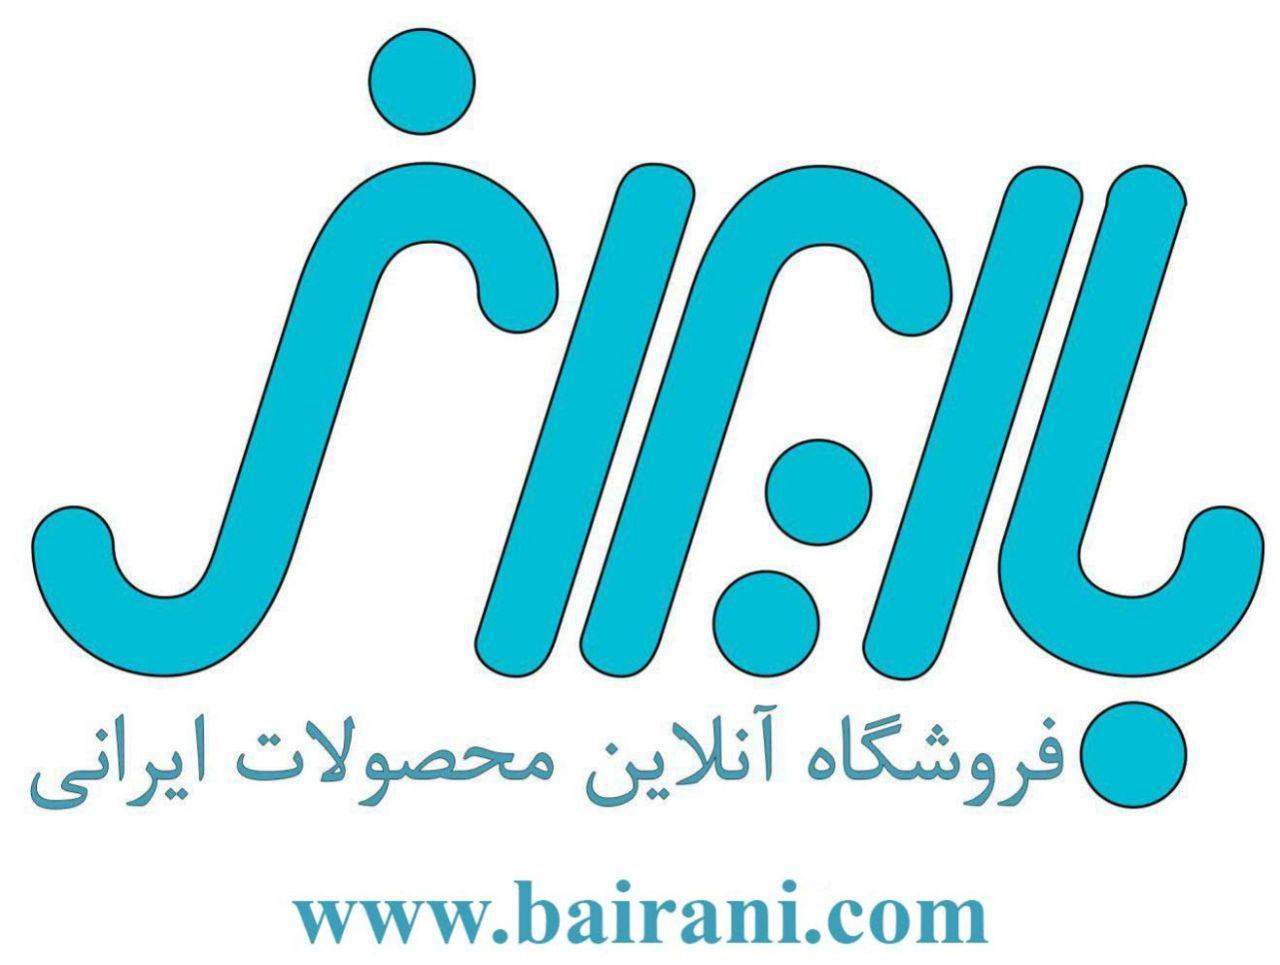 فروشگاه اینترنتی باایرانی، حامی محصولات ایرانی